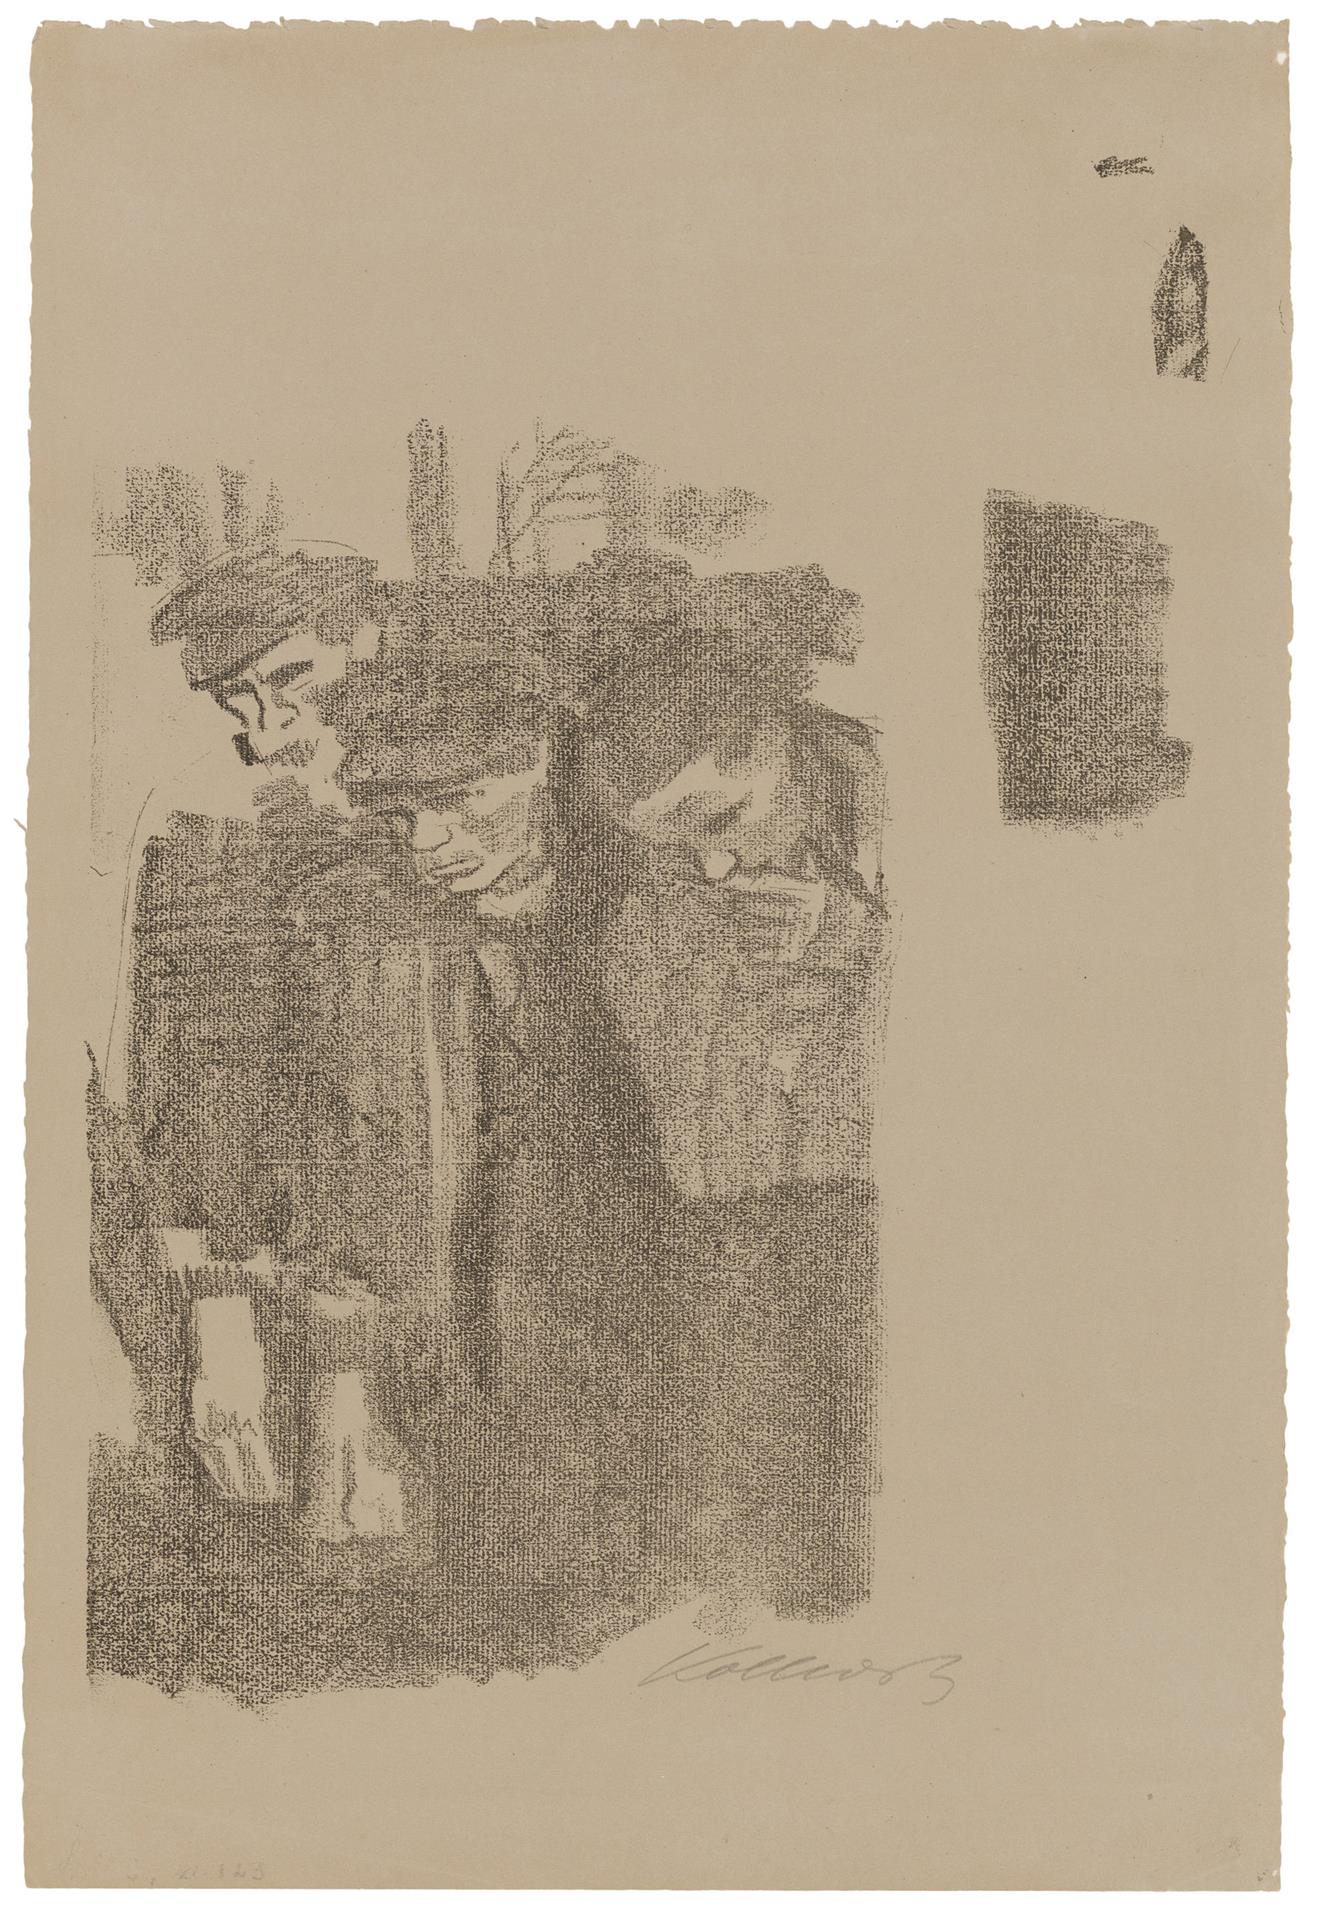 Käthe Kollwitz, Cimetière de mars, première version, 1913, lithographie au crayon (report ), Kn 127, Collection Kollwitz de Cologne © Käthe Kollwitz Museum Köln